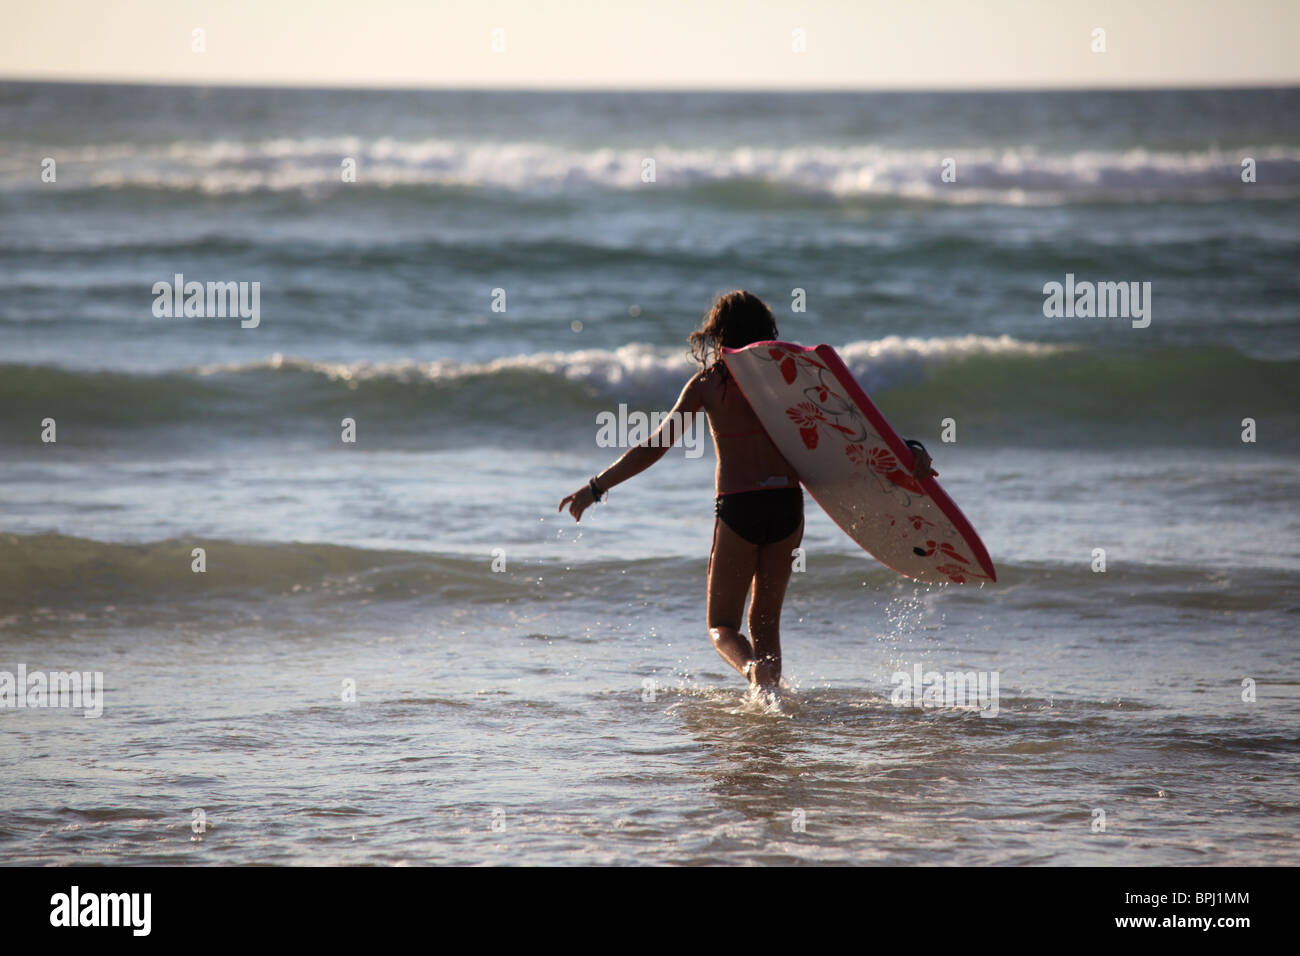 Jeune Surfeur Qui va Pratiquer la Glisse Sur l'Océan Atlantique Stockfoto